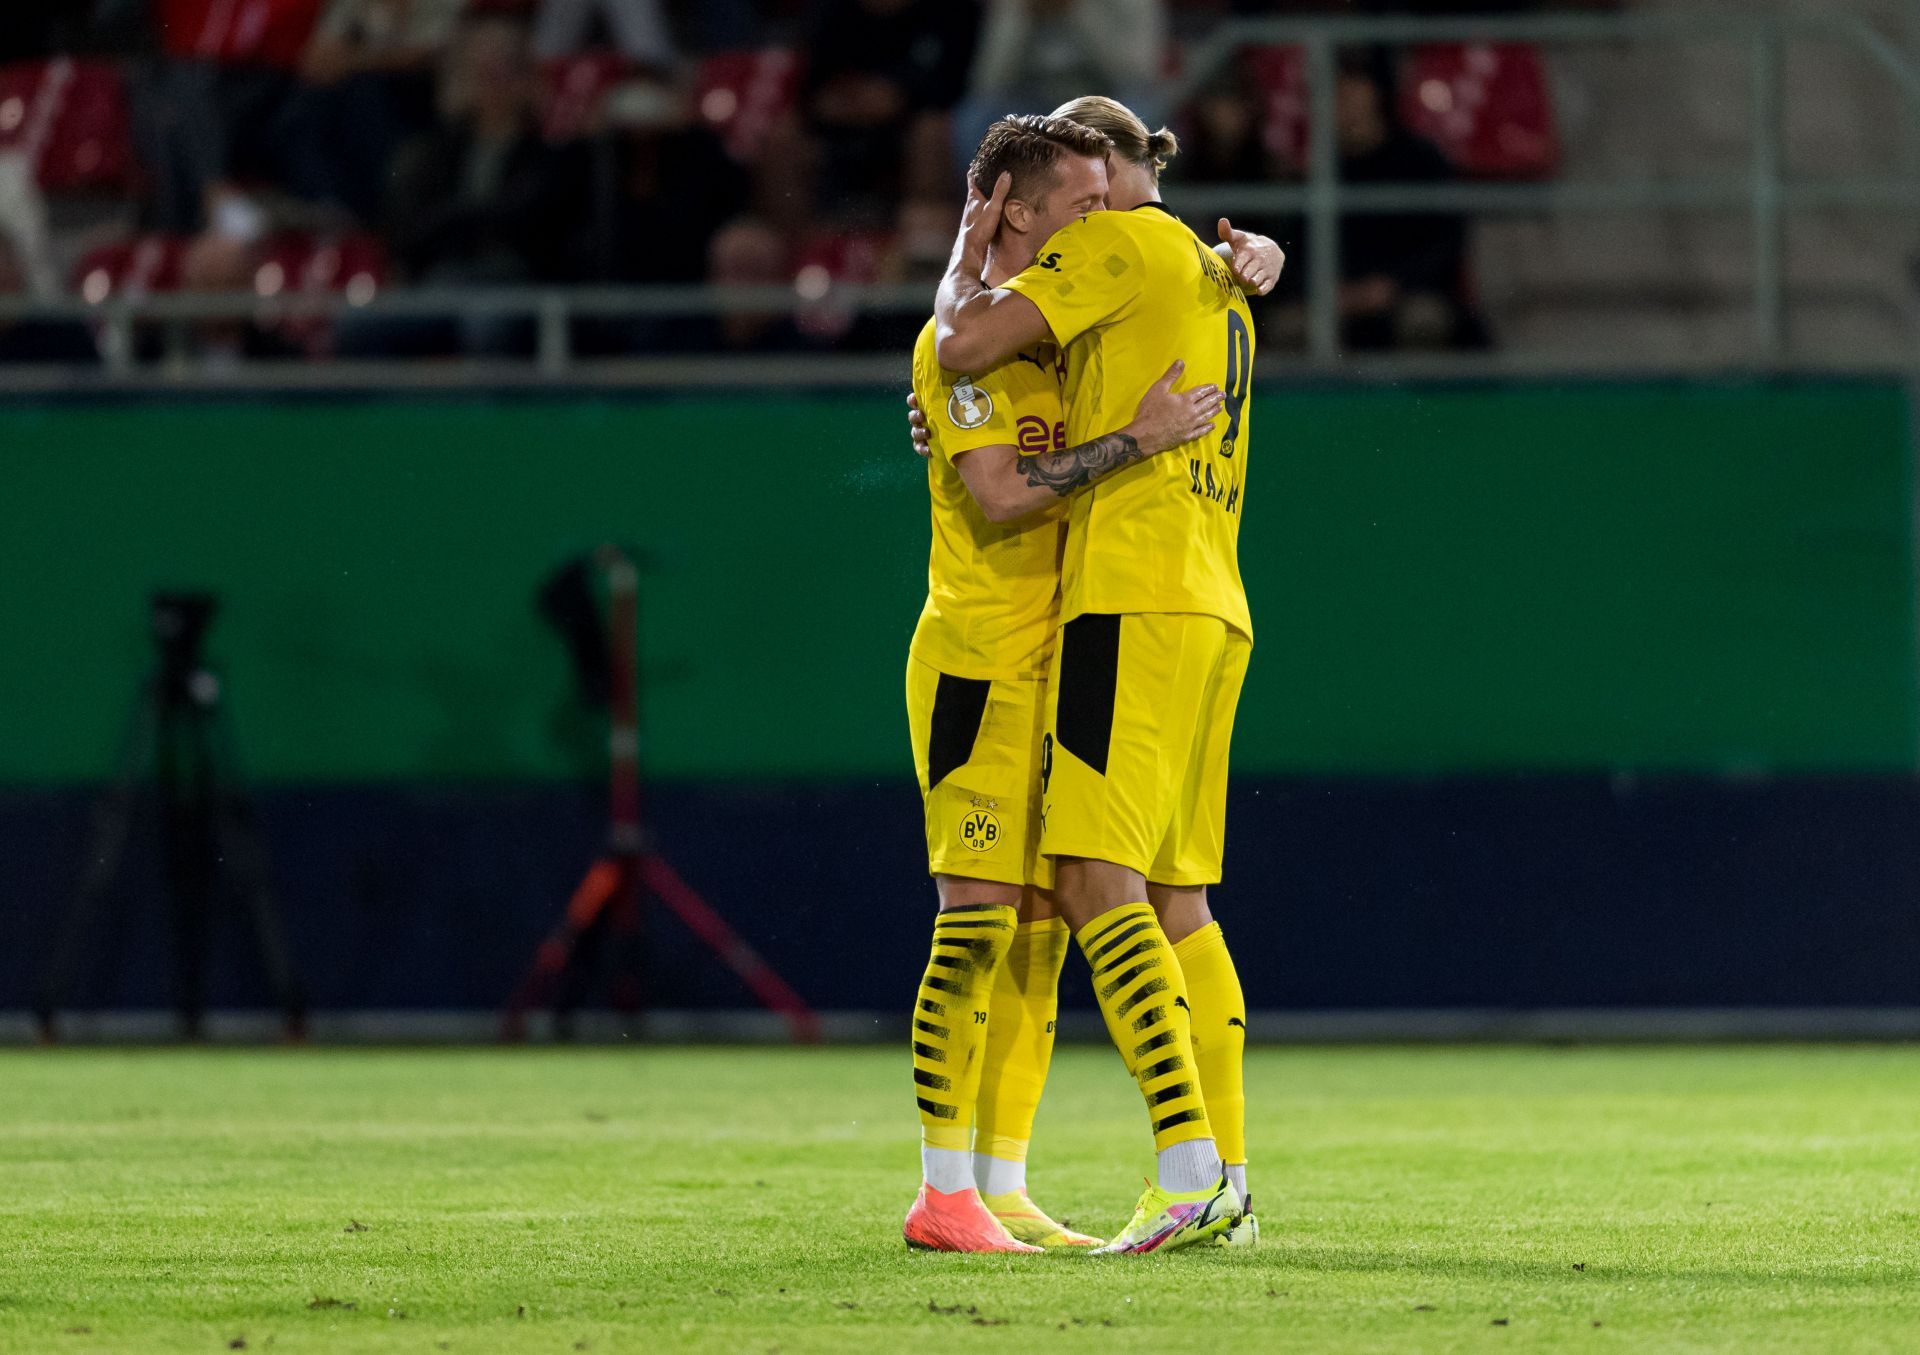 SV Wehen Wiesbaden v Borussia Dortmund - DFB Cup: First Round